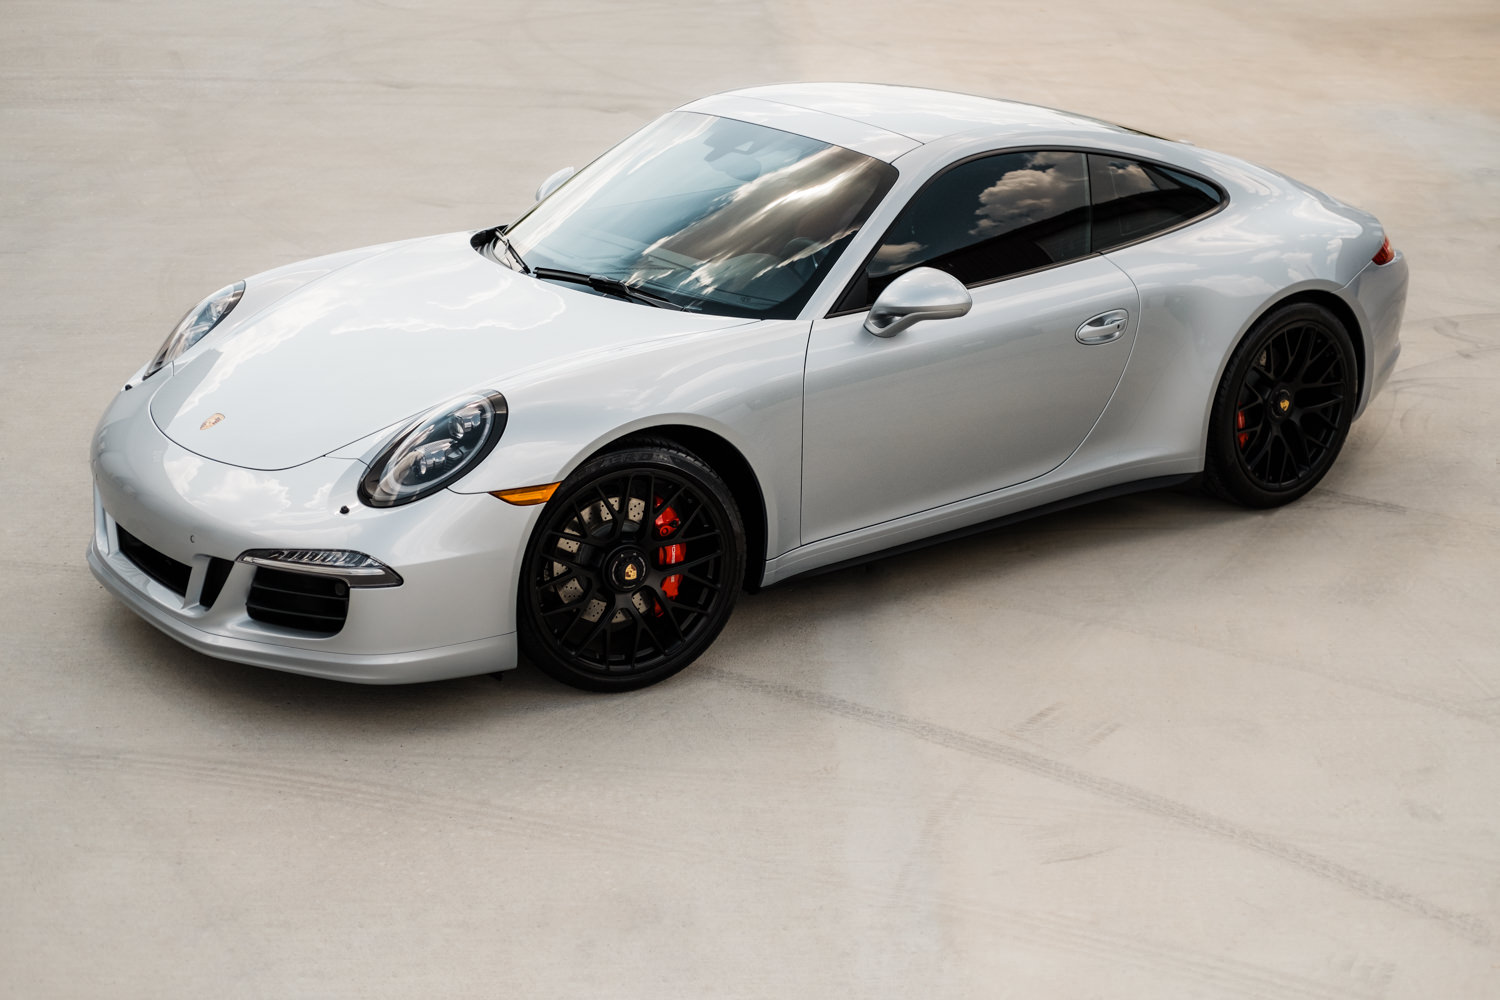 Porsche 911 - Porsche - Wichita Clear Bra - XPEL - XPEL Ultimate - Ceramic Pro - Ceramic Coating - Car Detailing - Porsche 911 GTS-180.jpg